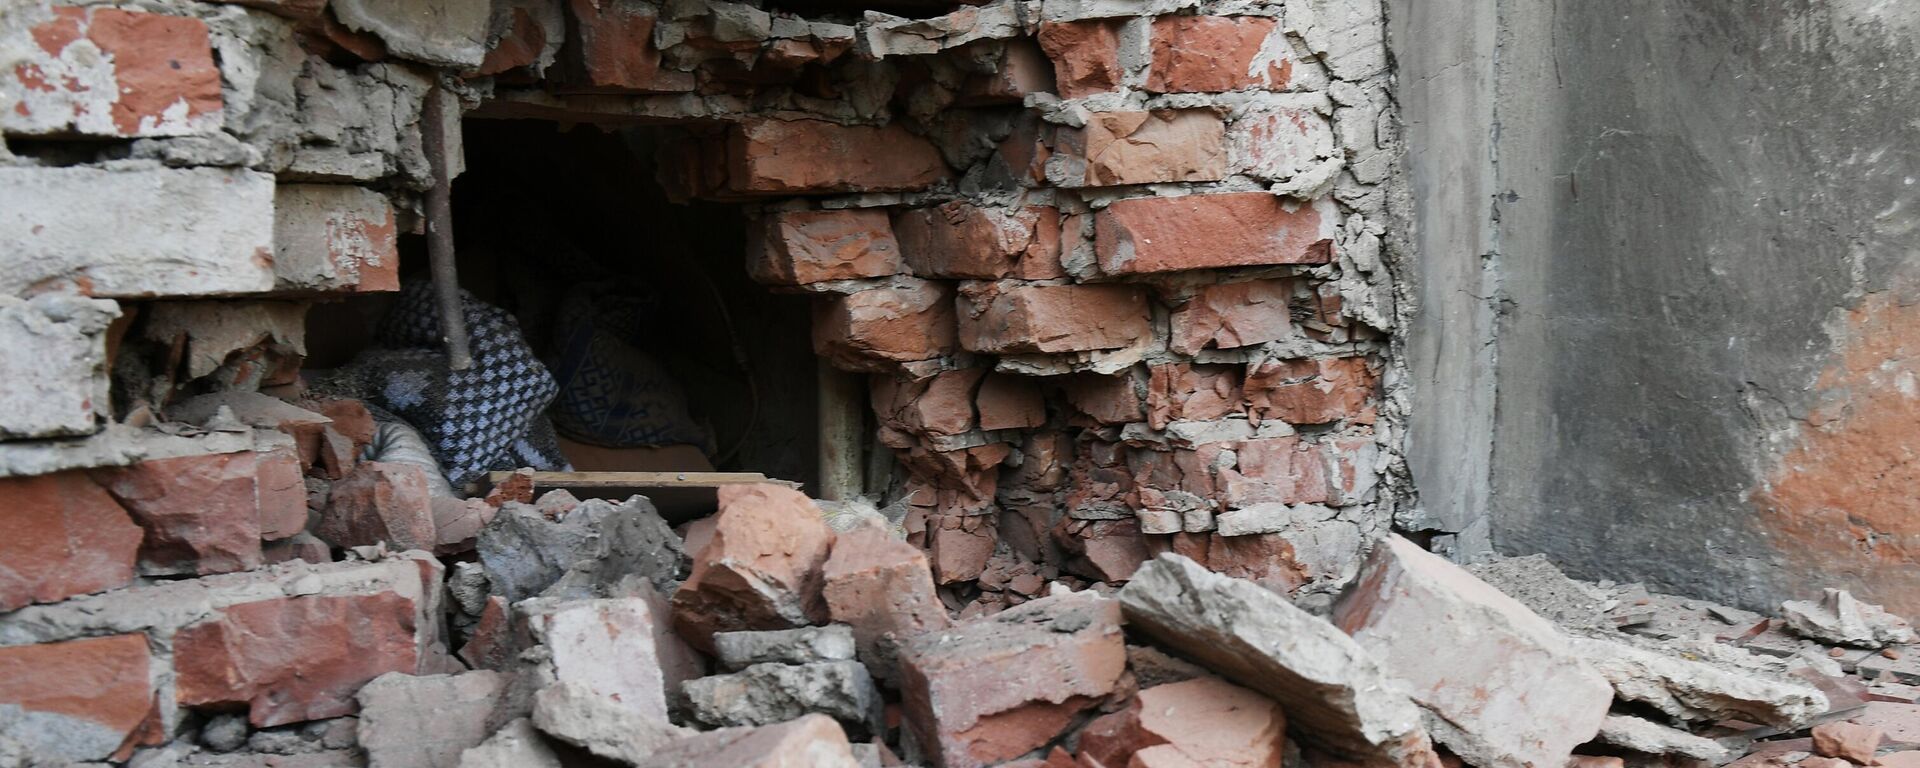 La casa dañada por explosiones en el centro de Donetsk - Sputnik Mundo, 1920, 30.07.2022